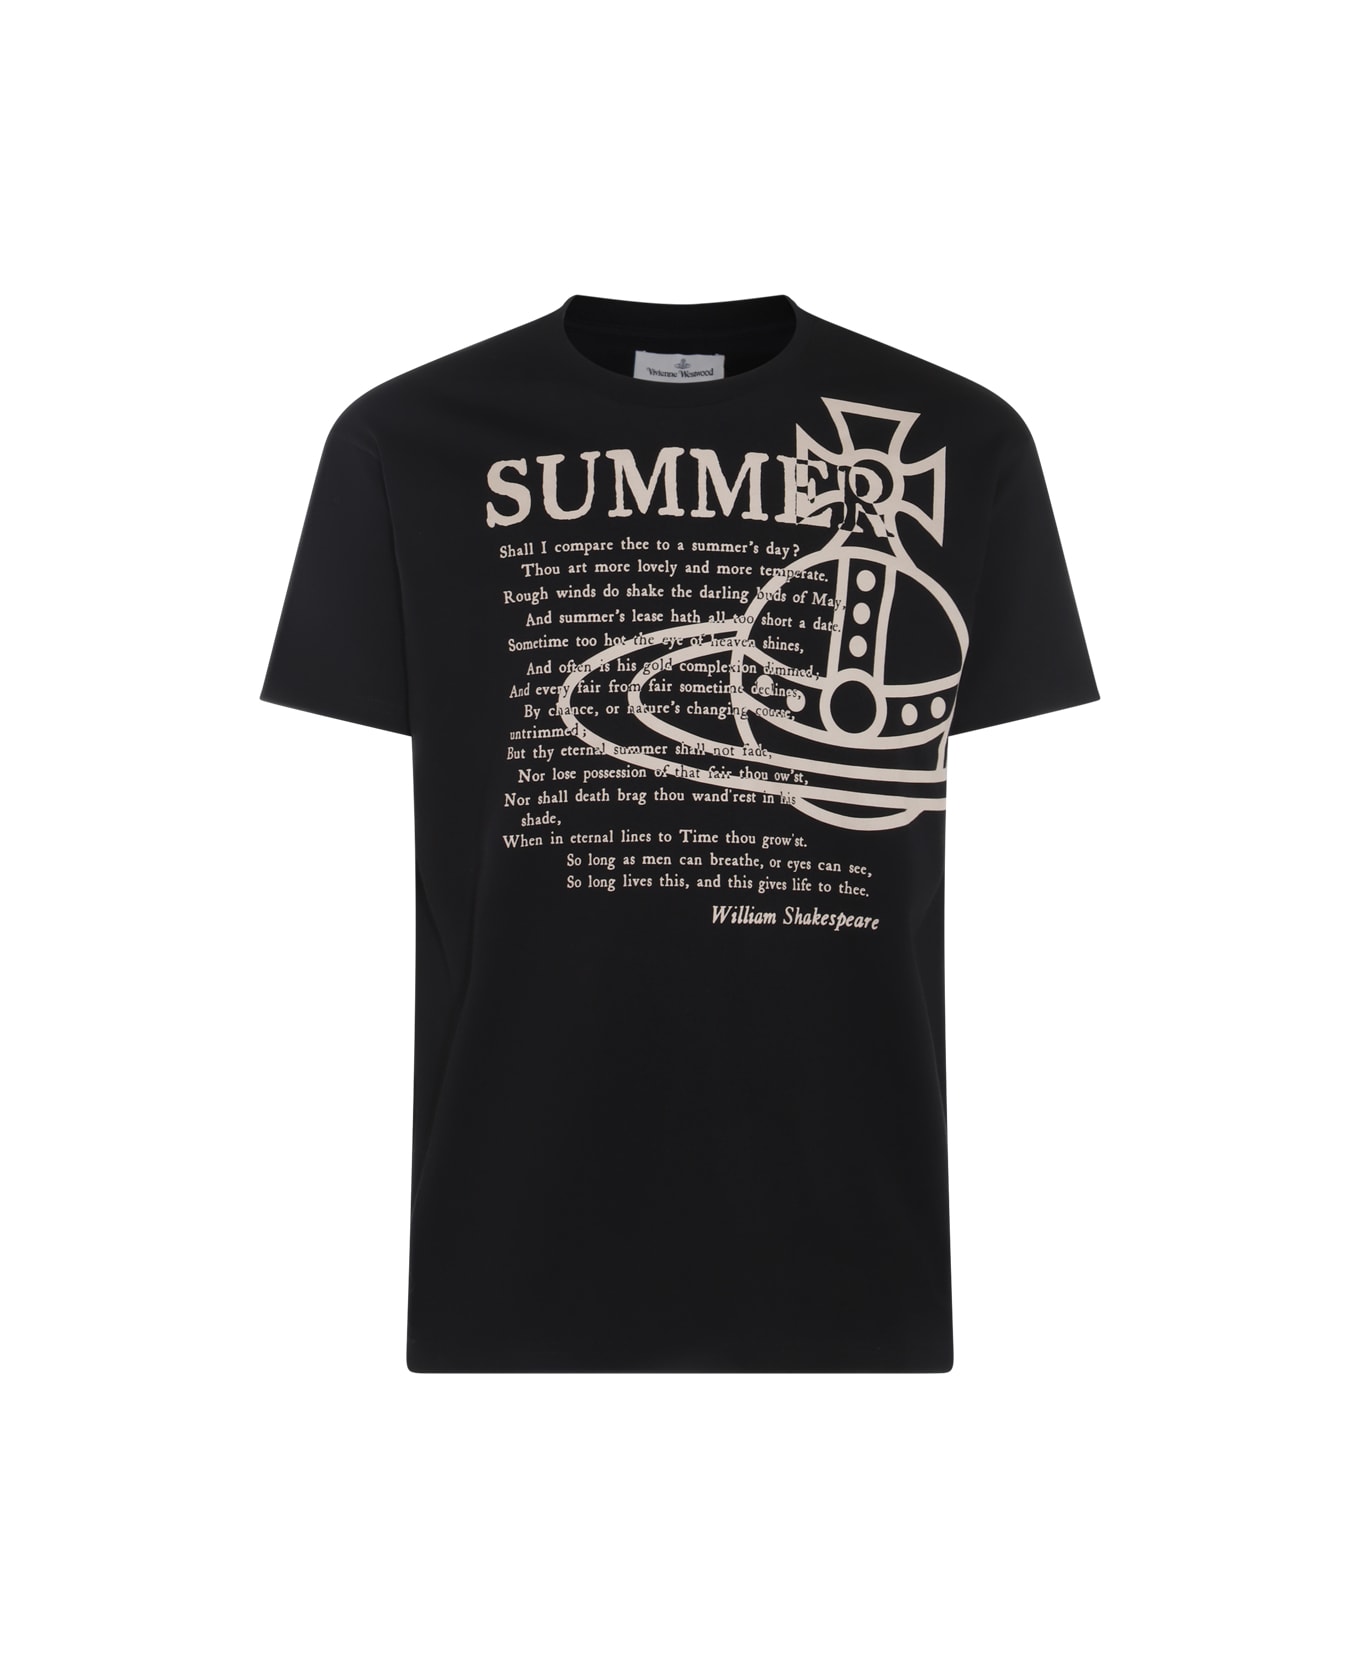 Vivienne Westwood Black And Beige Cotton T-shirt - Black